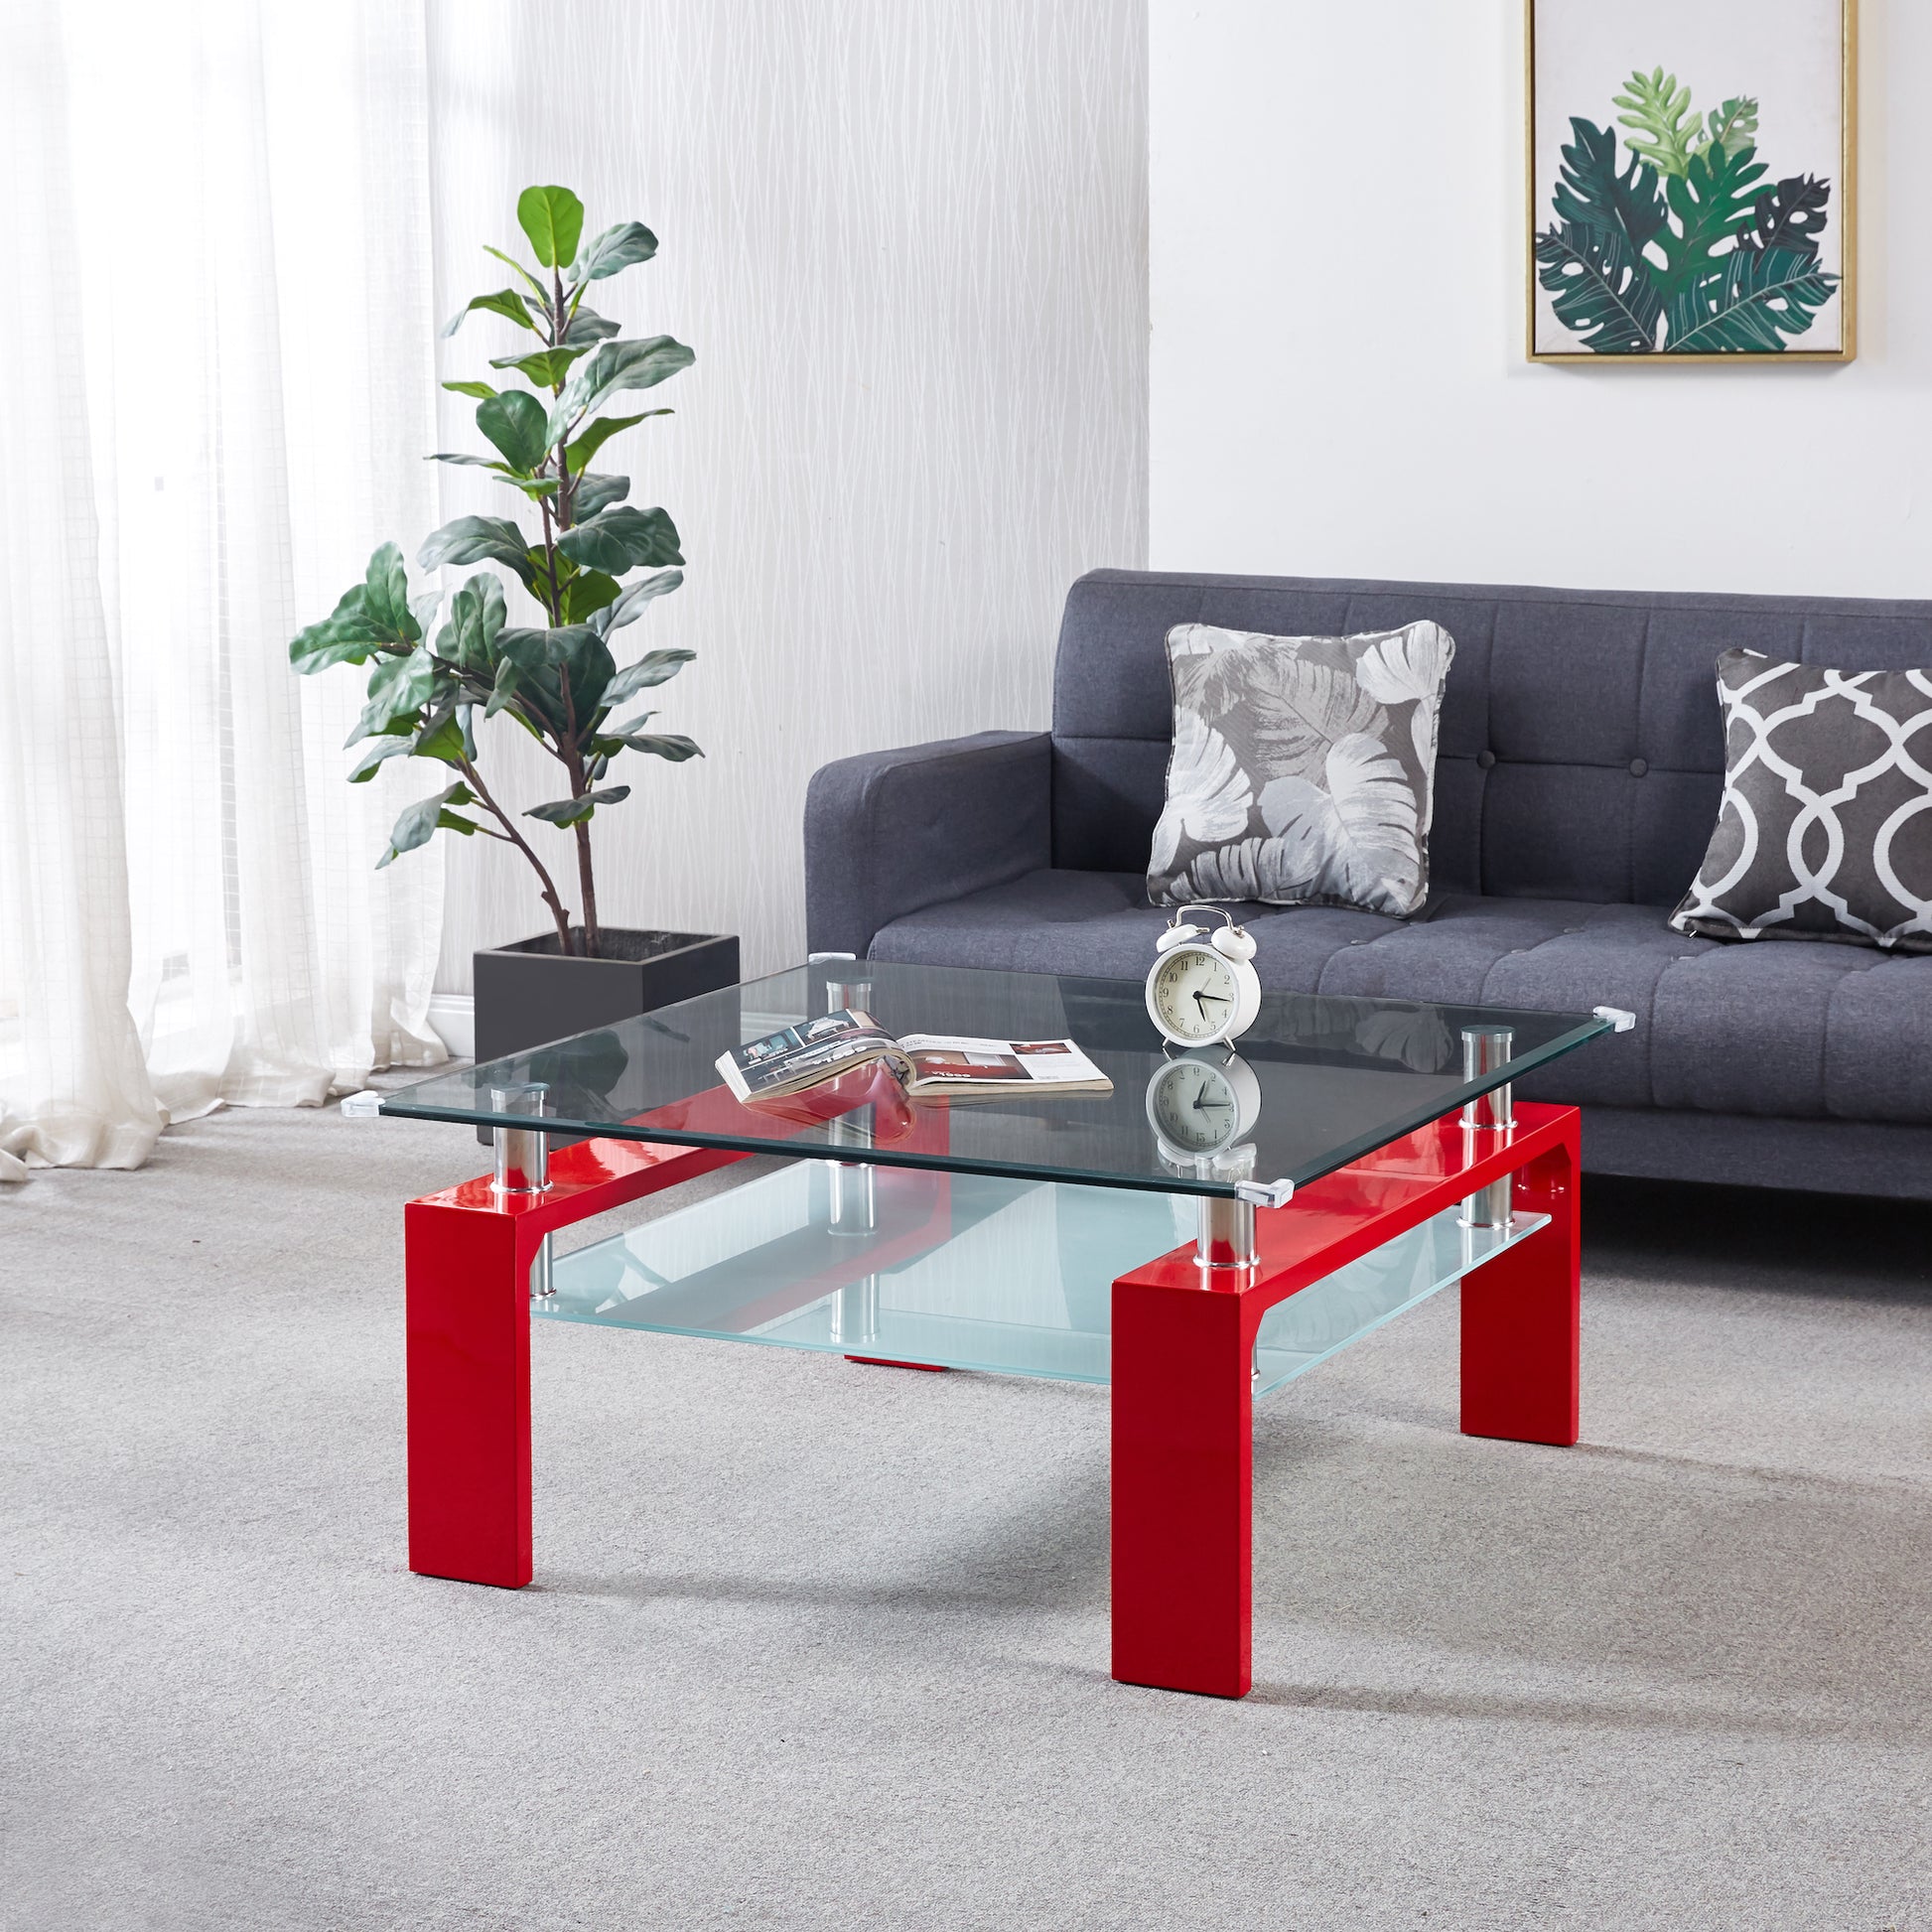 Glass Furniture - Ultra Modern